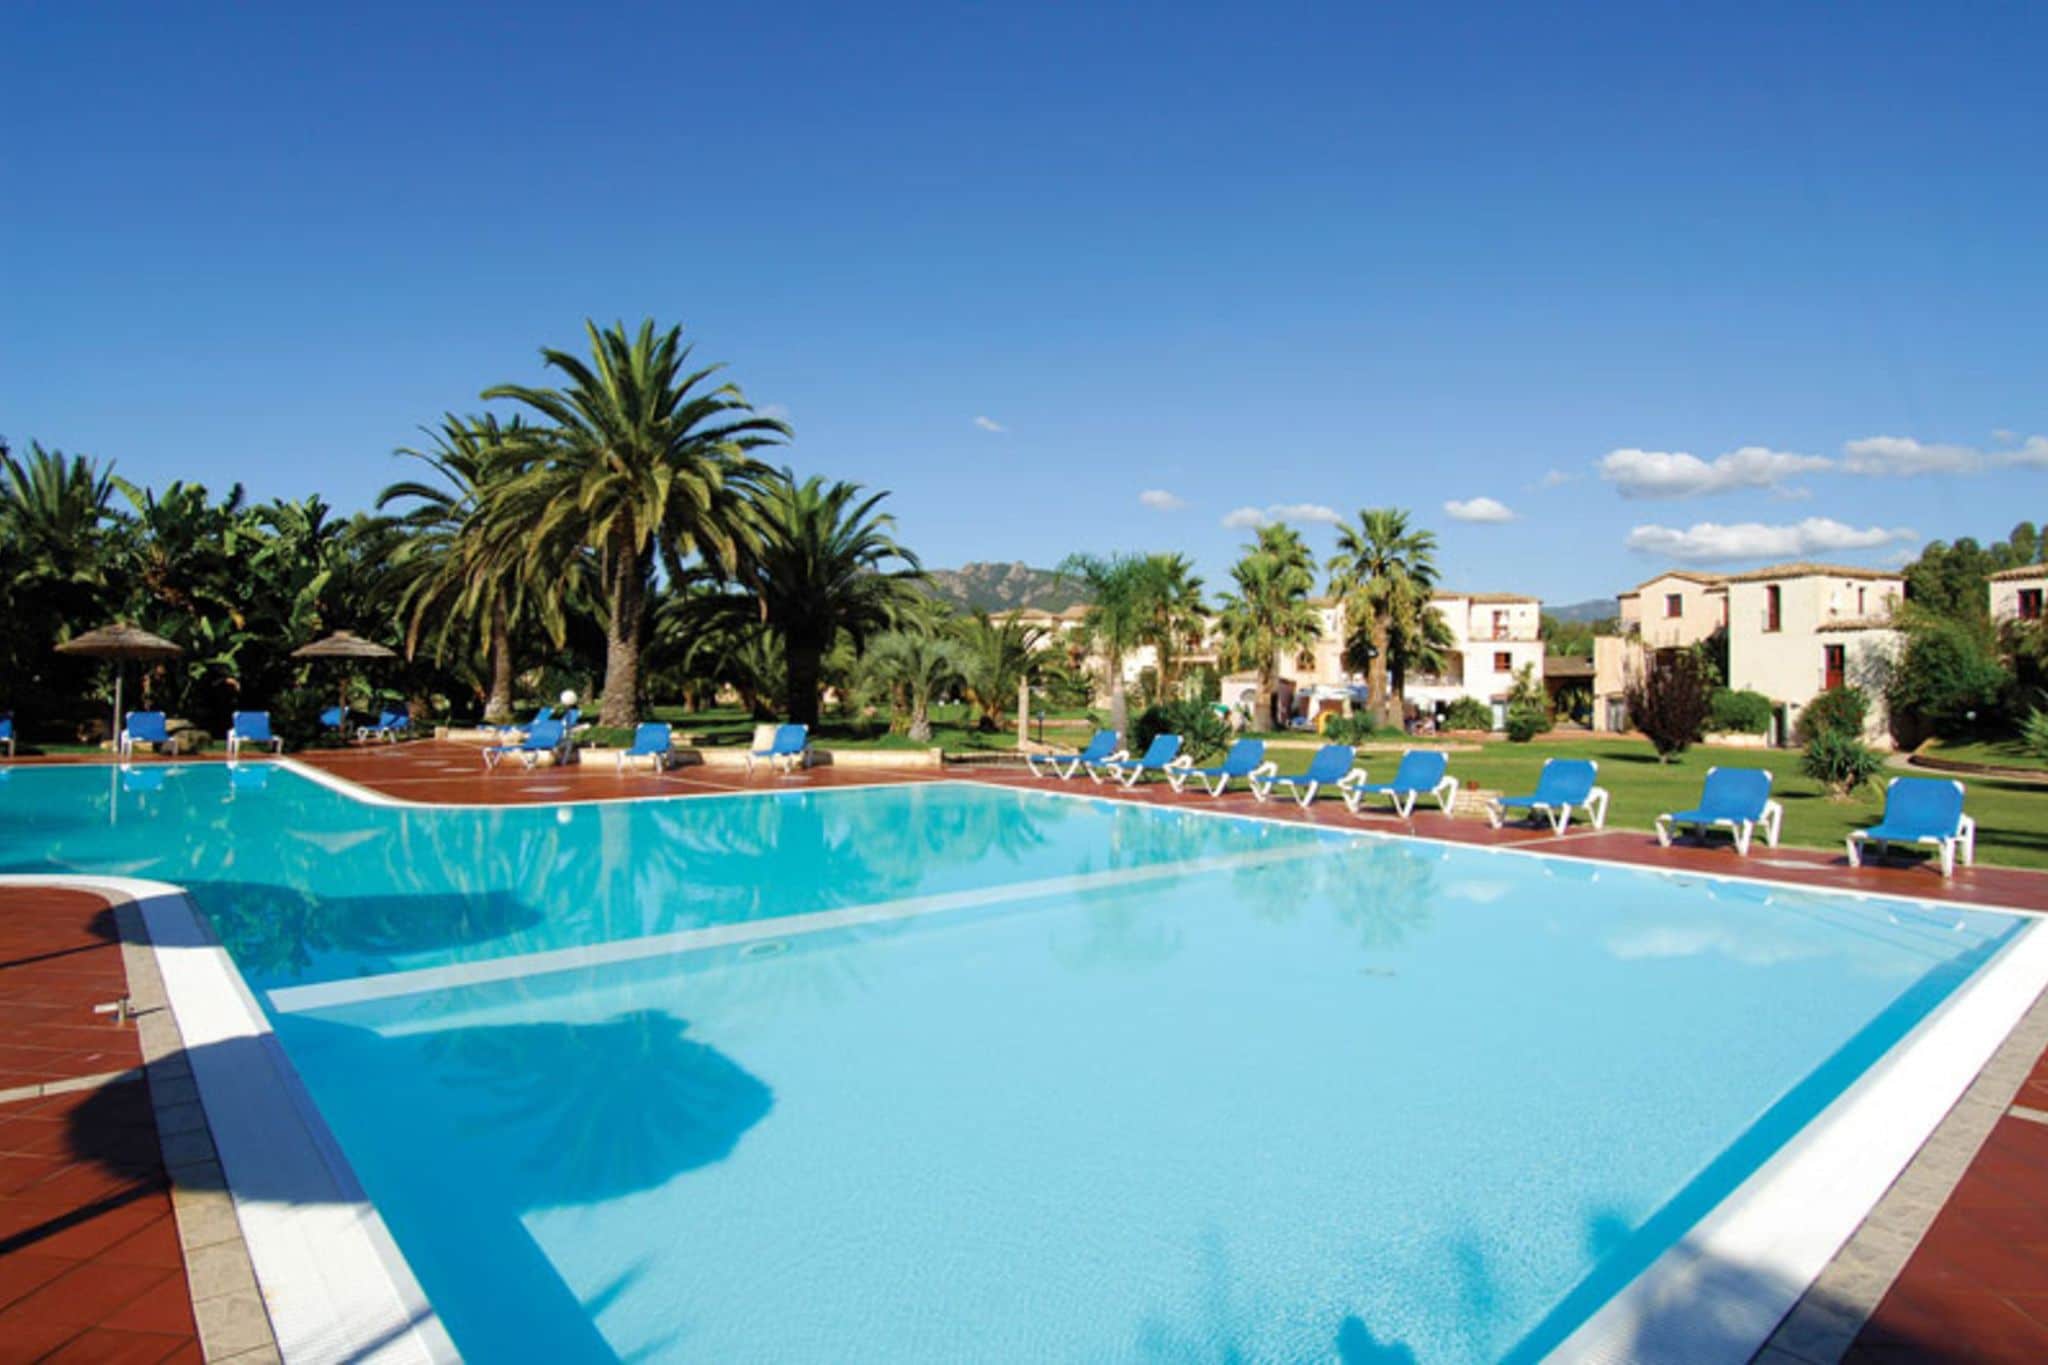 Appartement met terras en zwembad in Sardinië